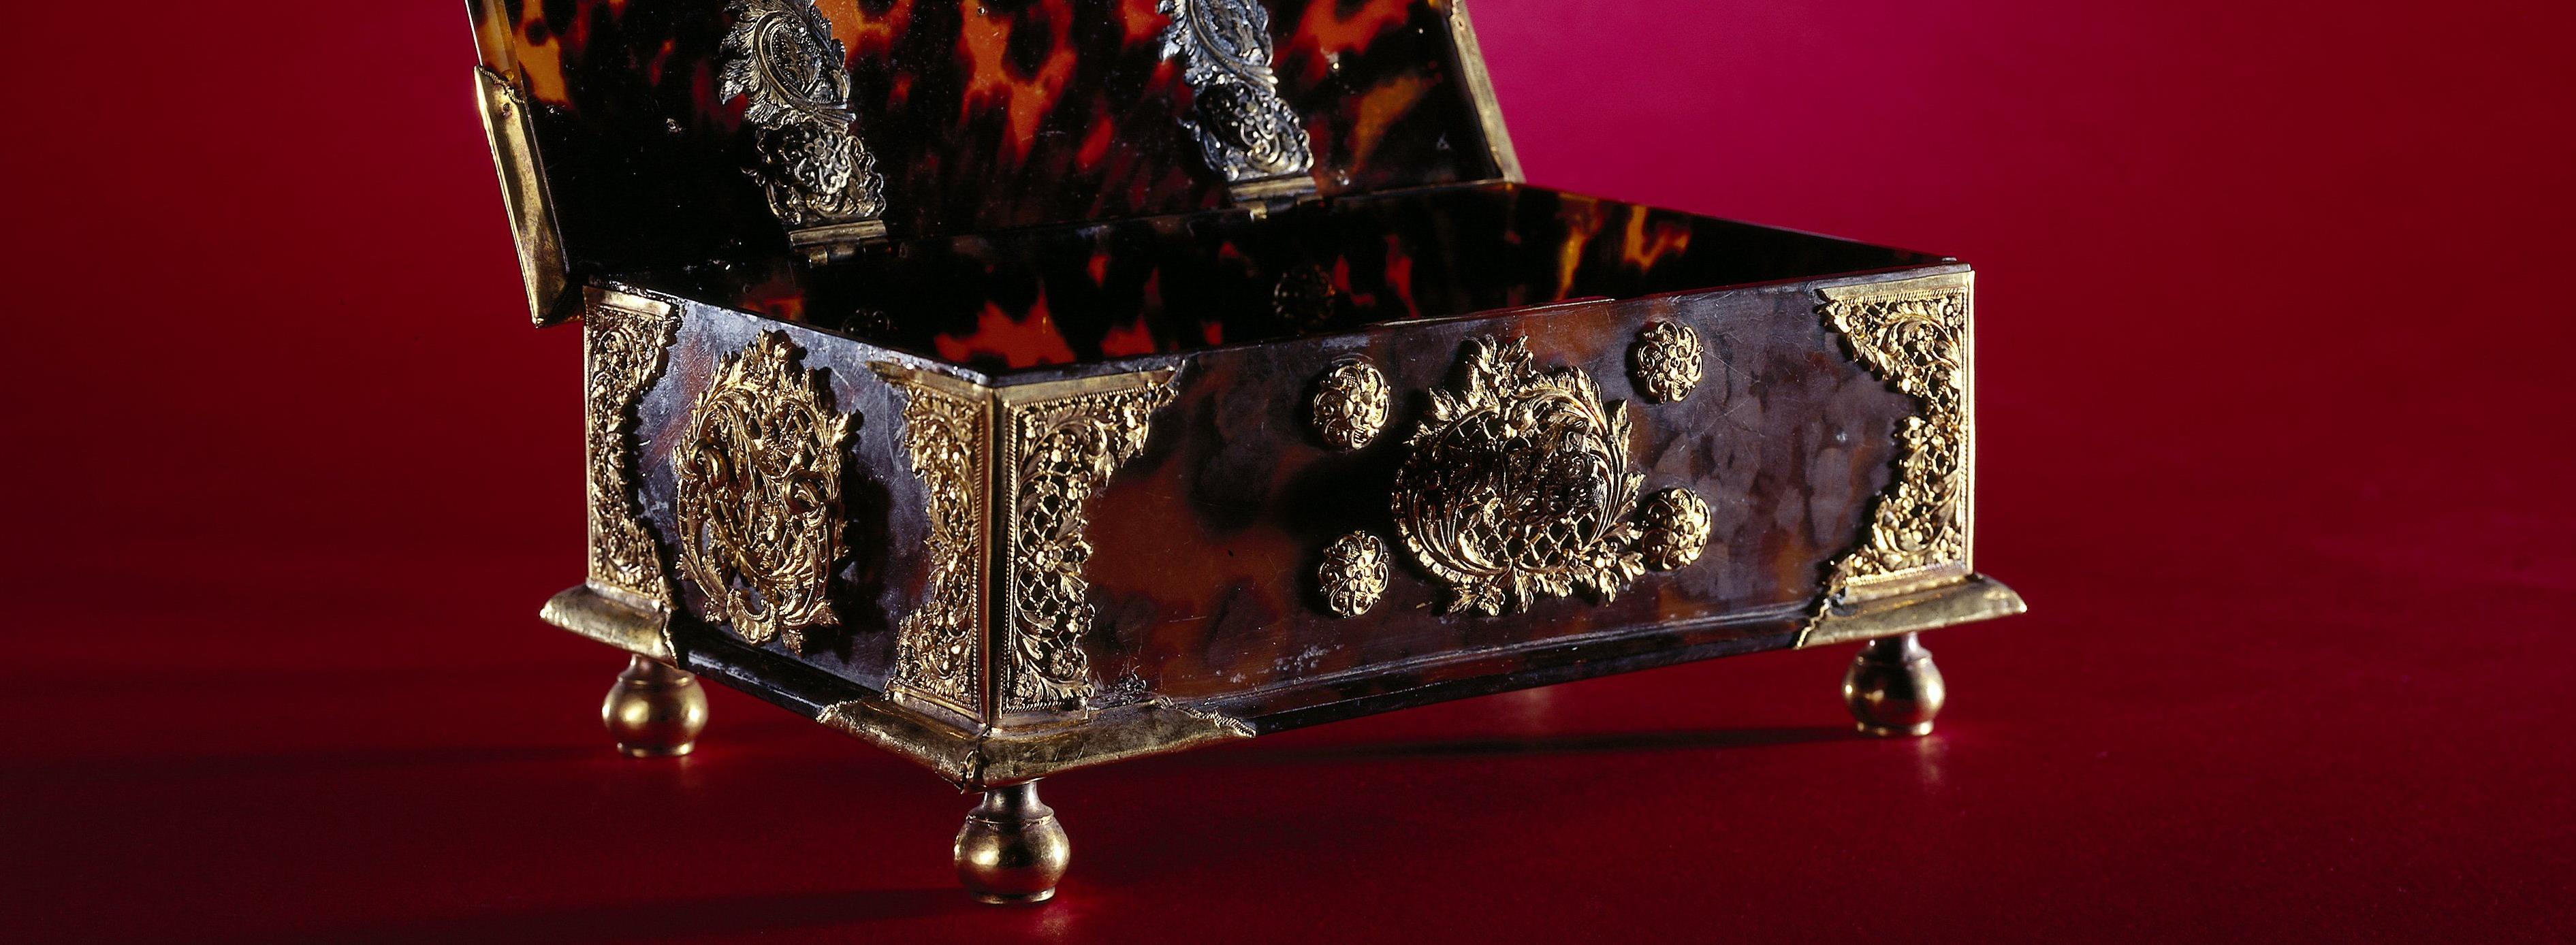 Kist van schildpad met beslag van goud en met klampen en sleutel van verguld zilver. Op vier balpoten van verguld koper, 1750 - 1775